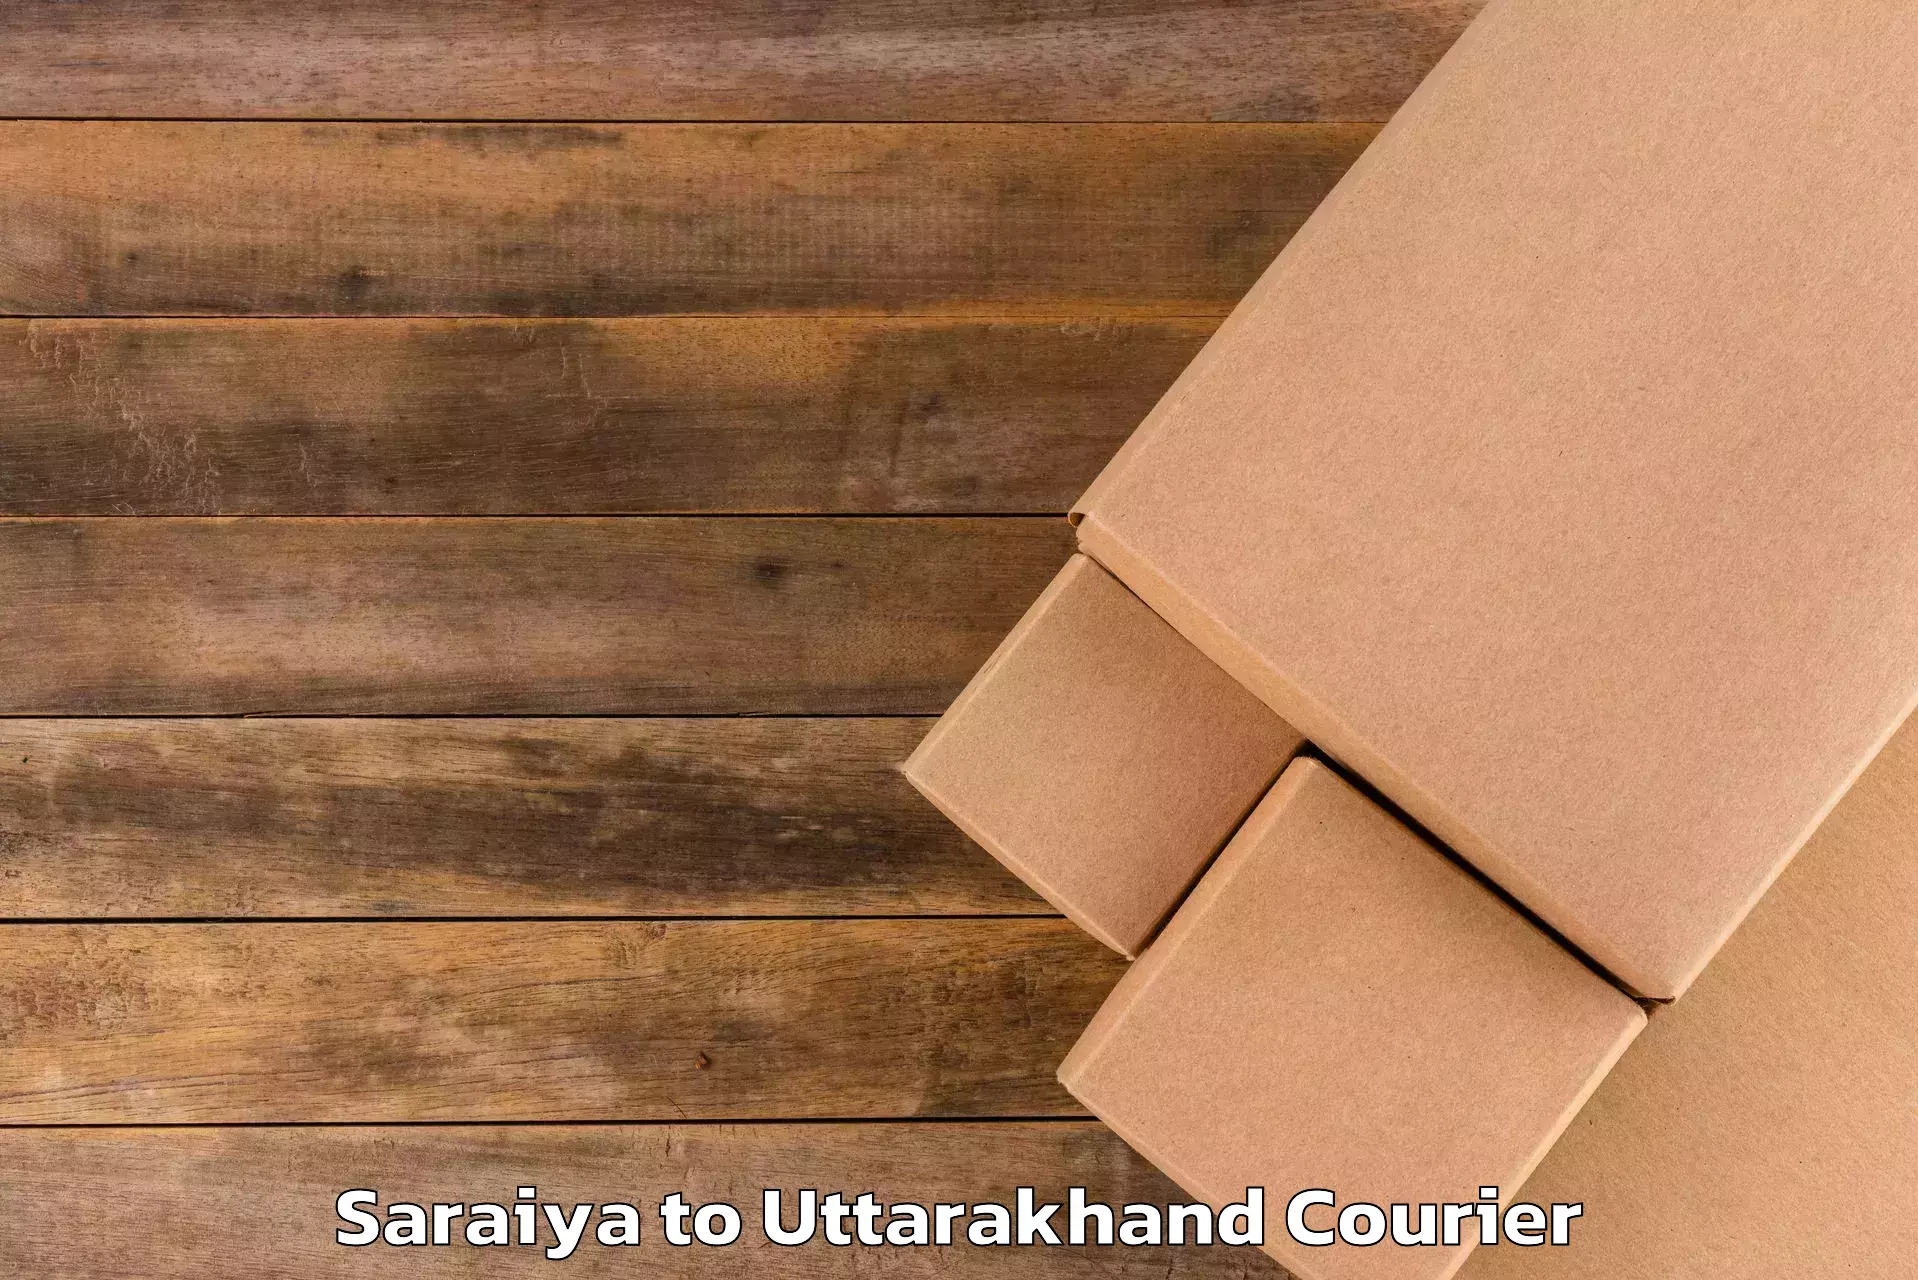 Baggage delivery technology Saraiya to Uttarakhand